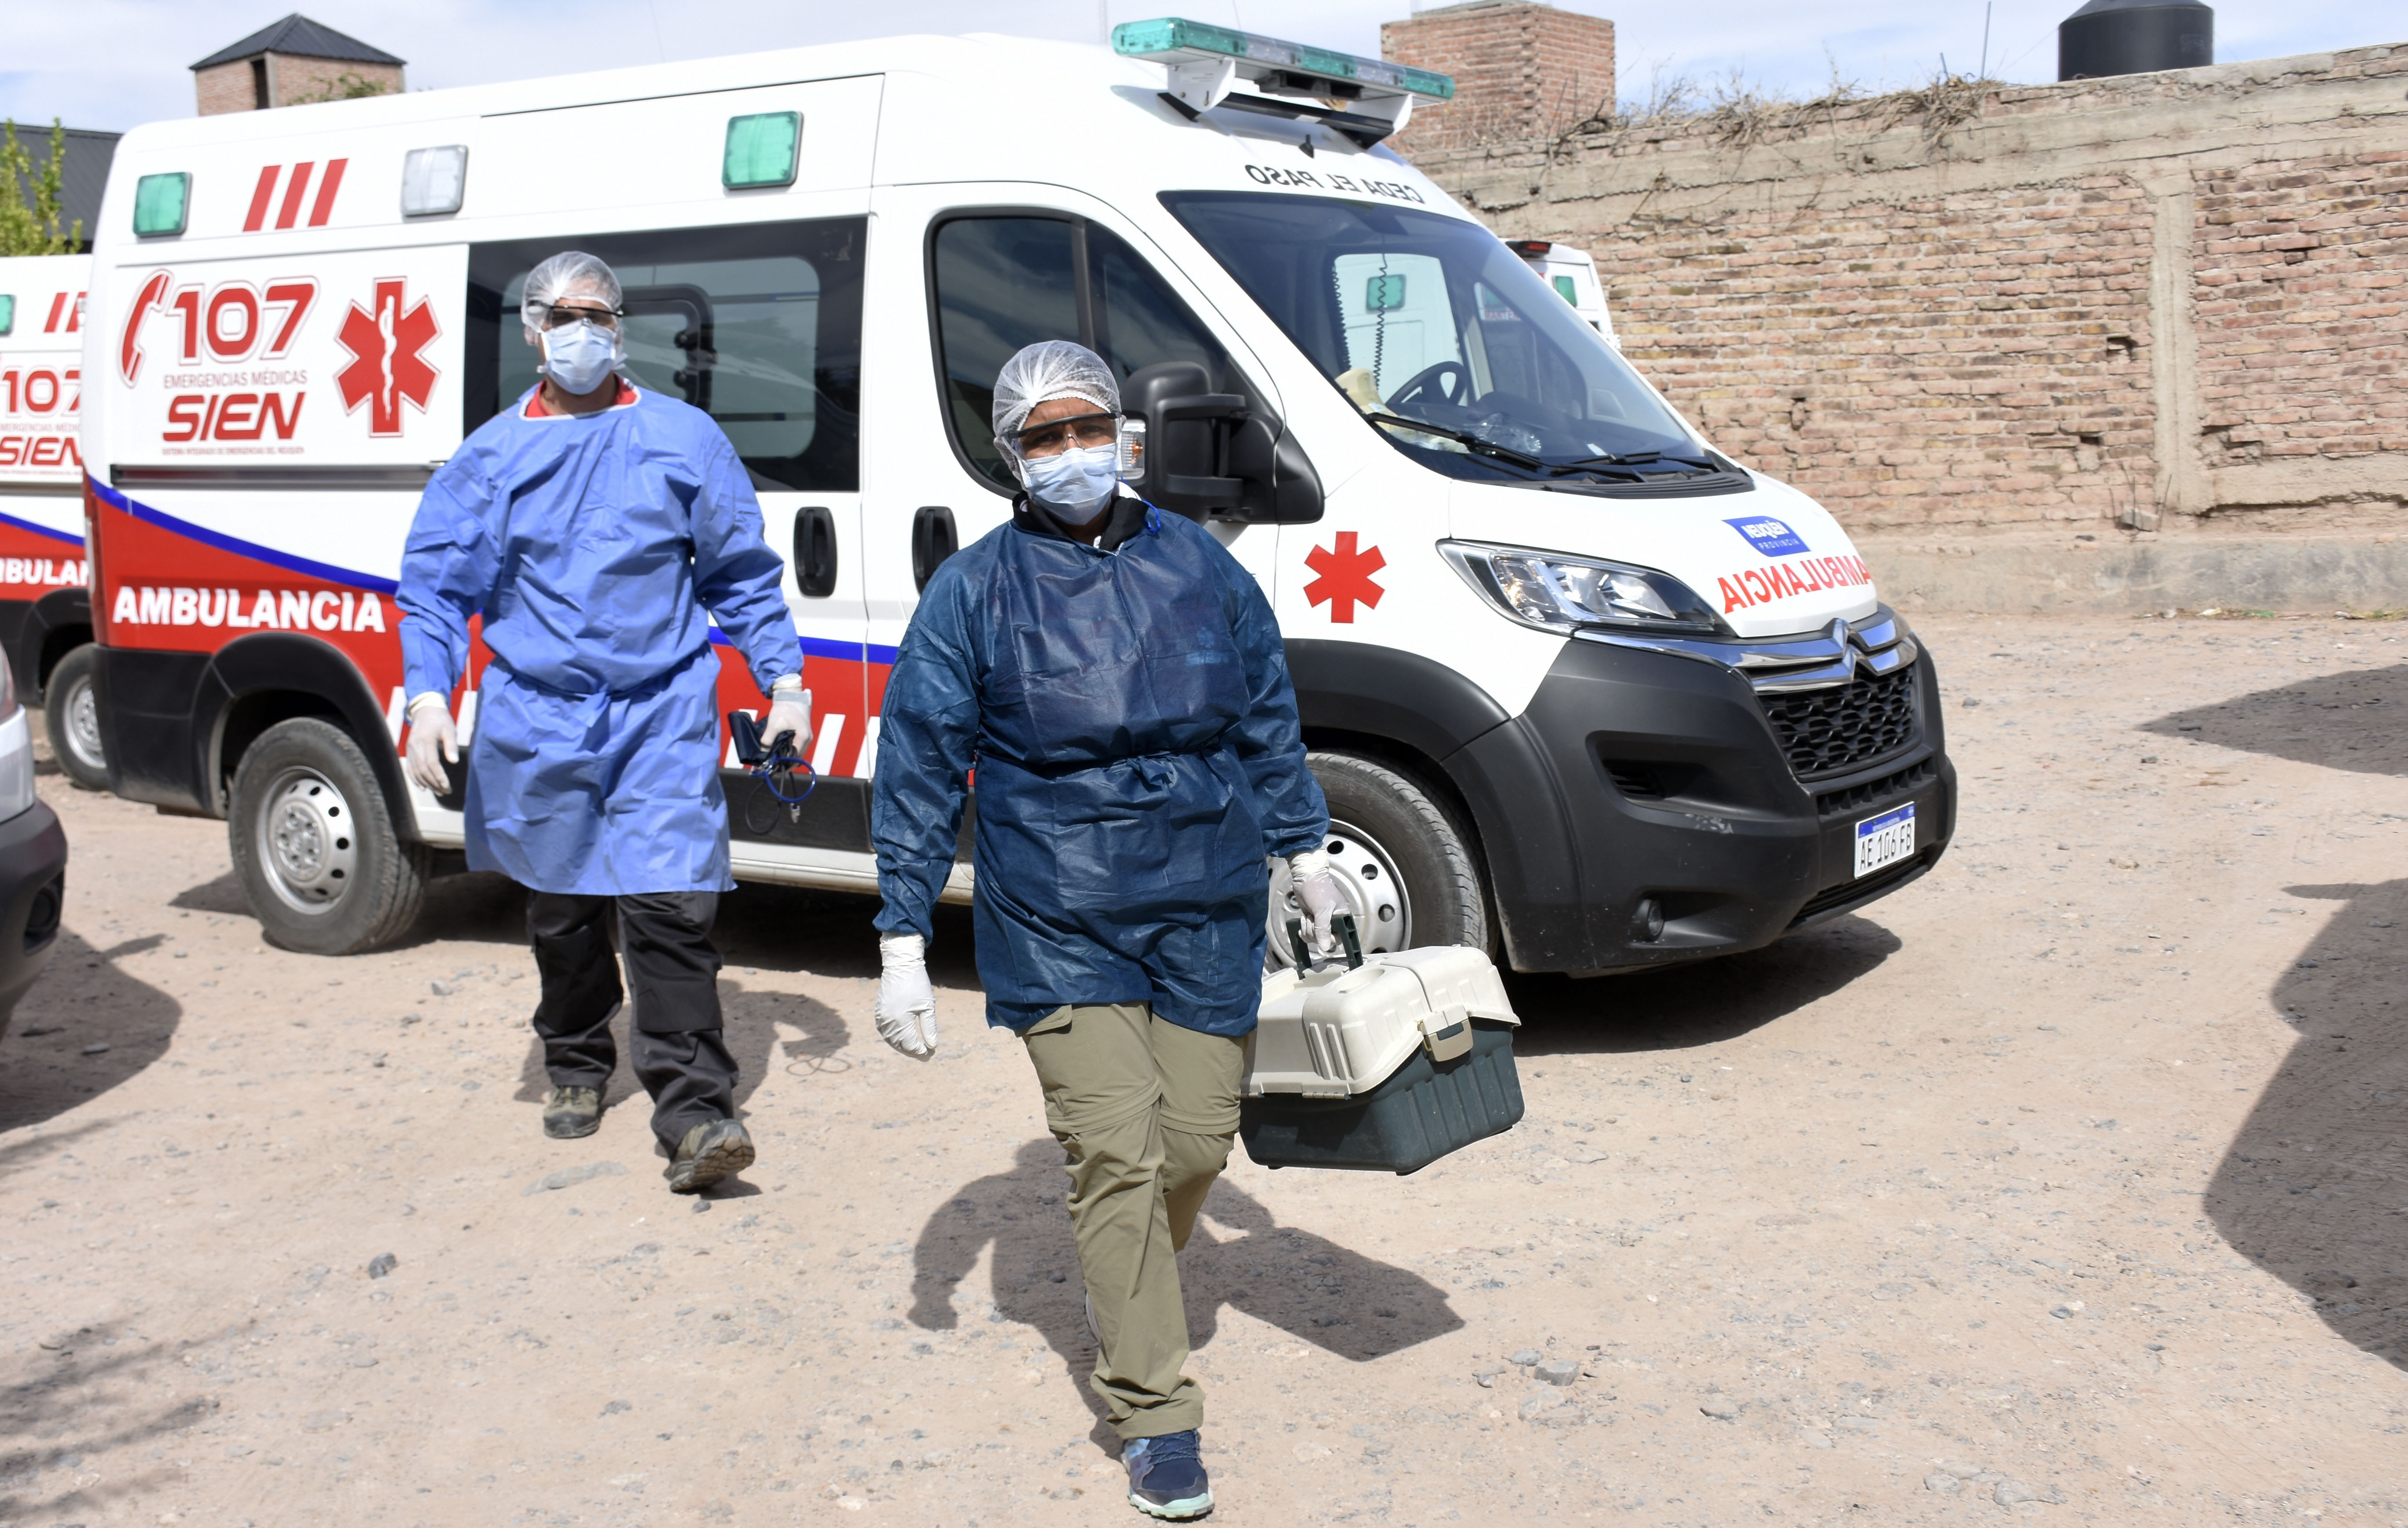 Trabajadores del SIEN realizando visitas sanitarias. Foto: Florencia Salto